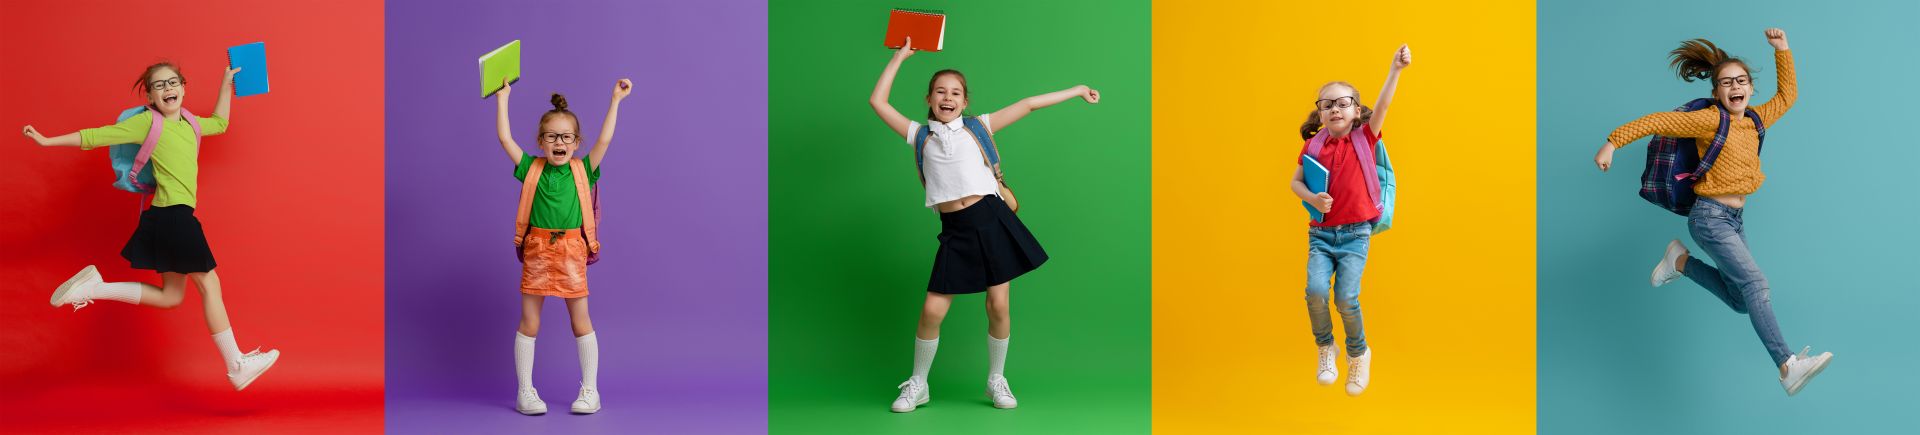 pięć zdjęć dziewczynek na kolorowych tłach z książkami i plecakami